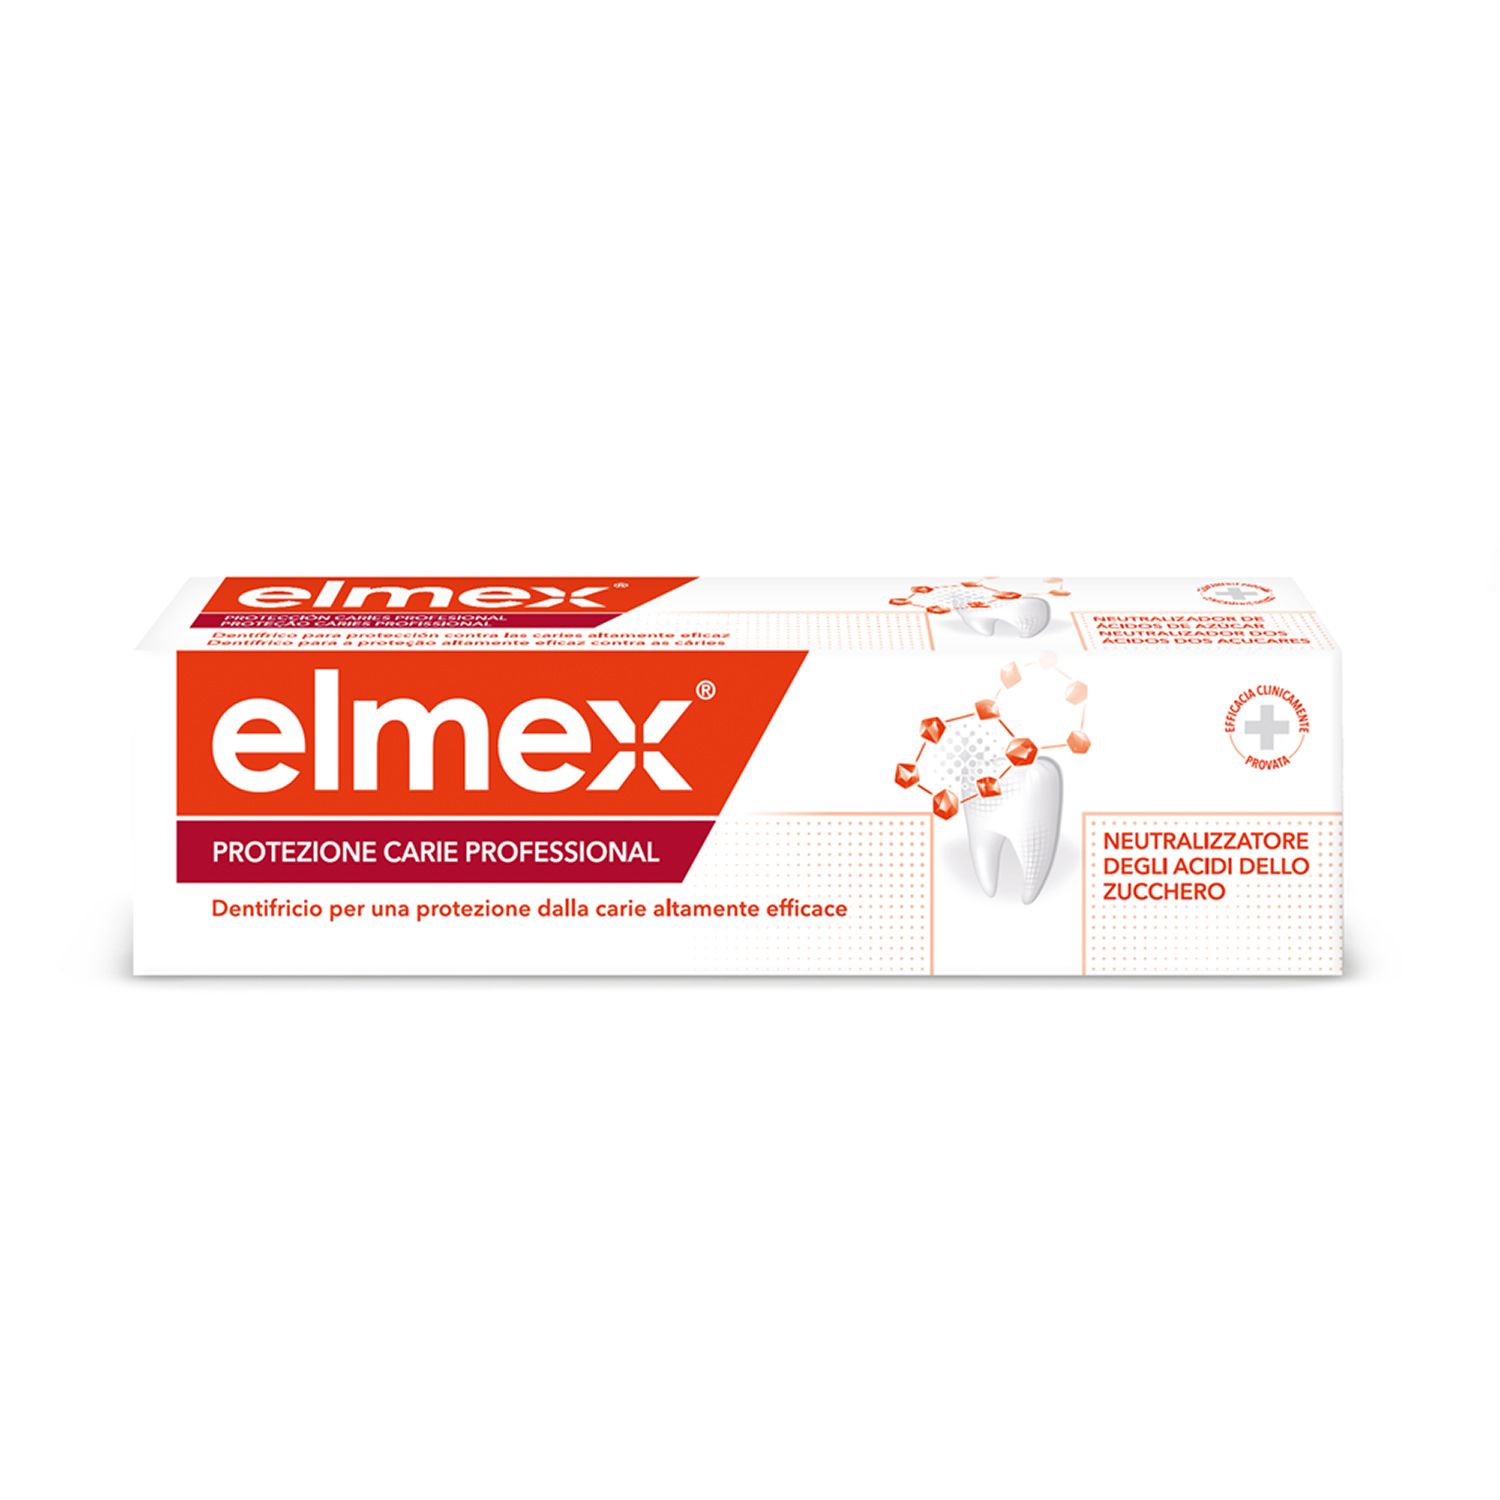 Image of elmex® Dentifricio Protezione Carie Professional